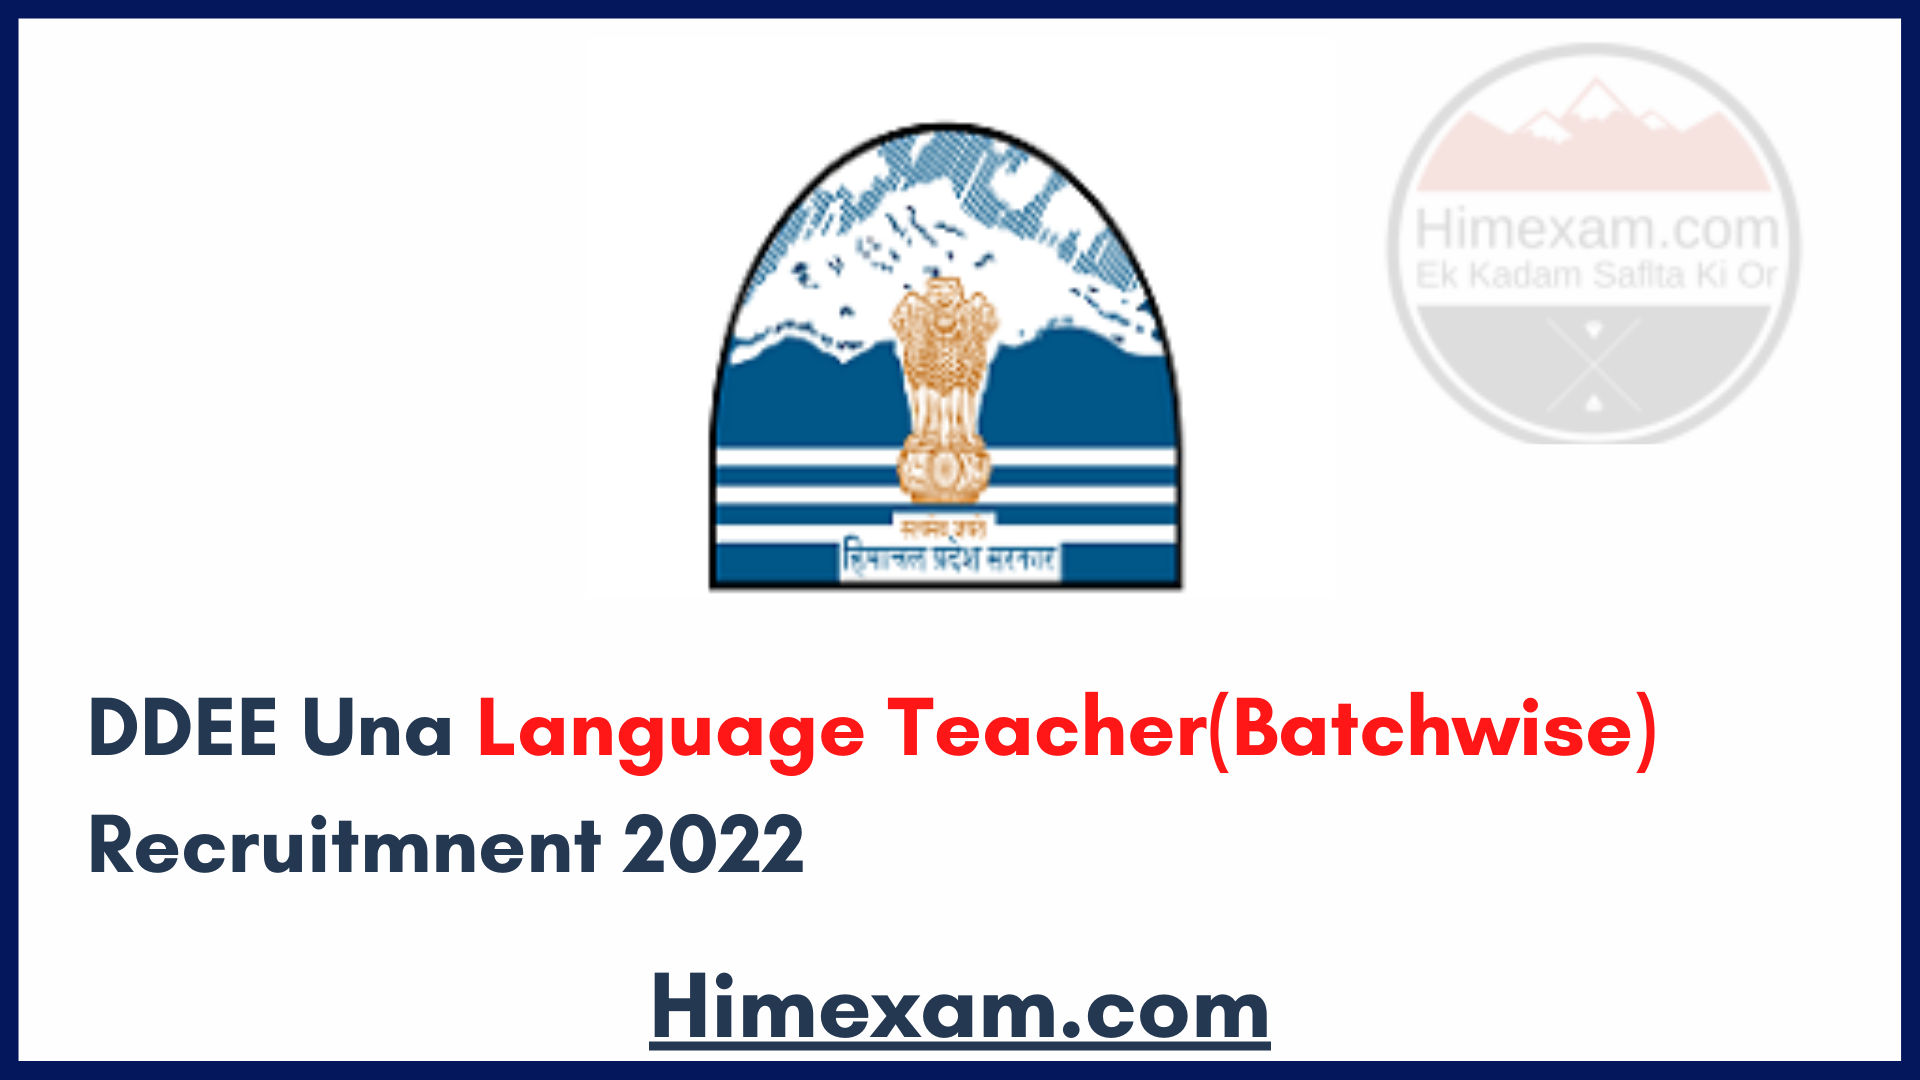 DDEE Una Language Teacher(Batchwise) Recruitmnent 2022